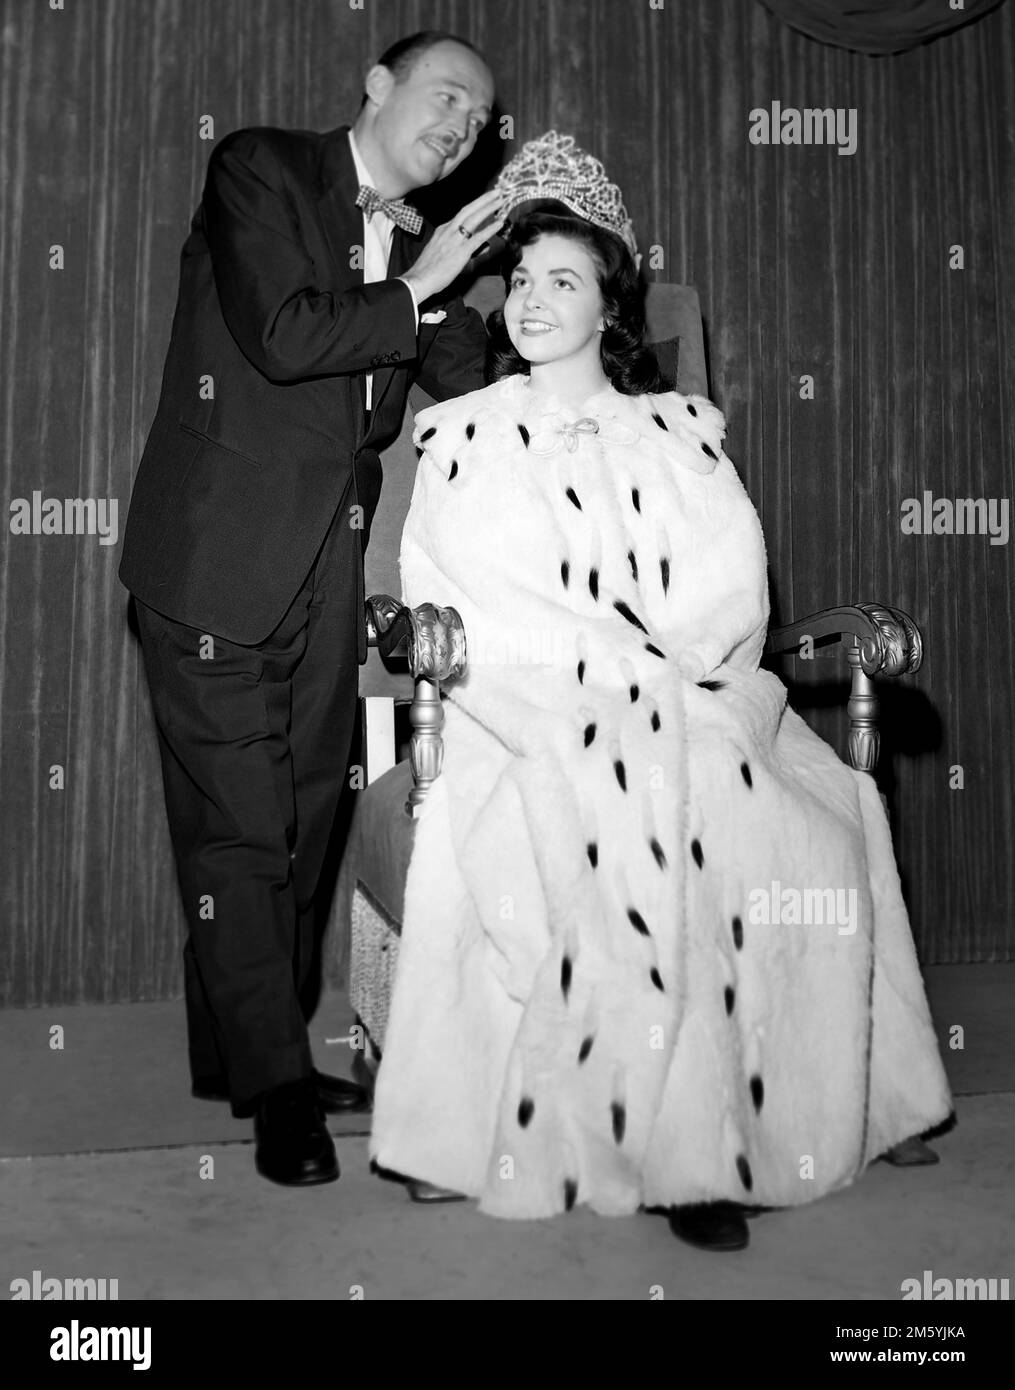 L'hôte Jack Bailey est présenté avec un gagnant dans une photo promotionnelle pour le jeu de télévision Queen for A Day, ca. 1958. Banque D'Images